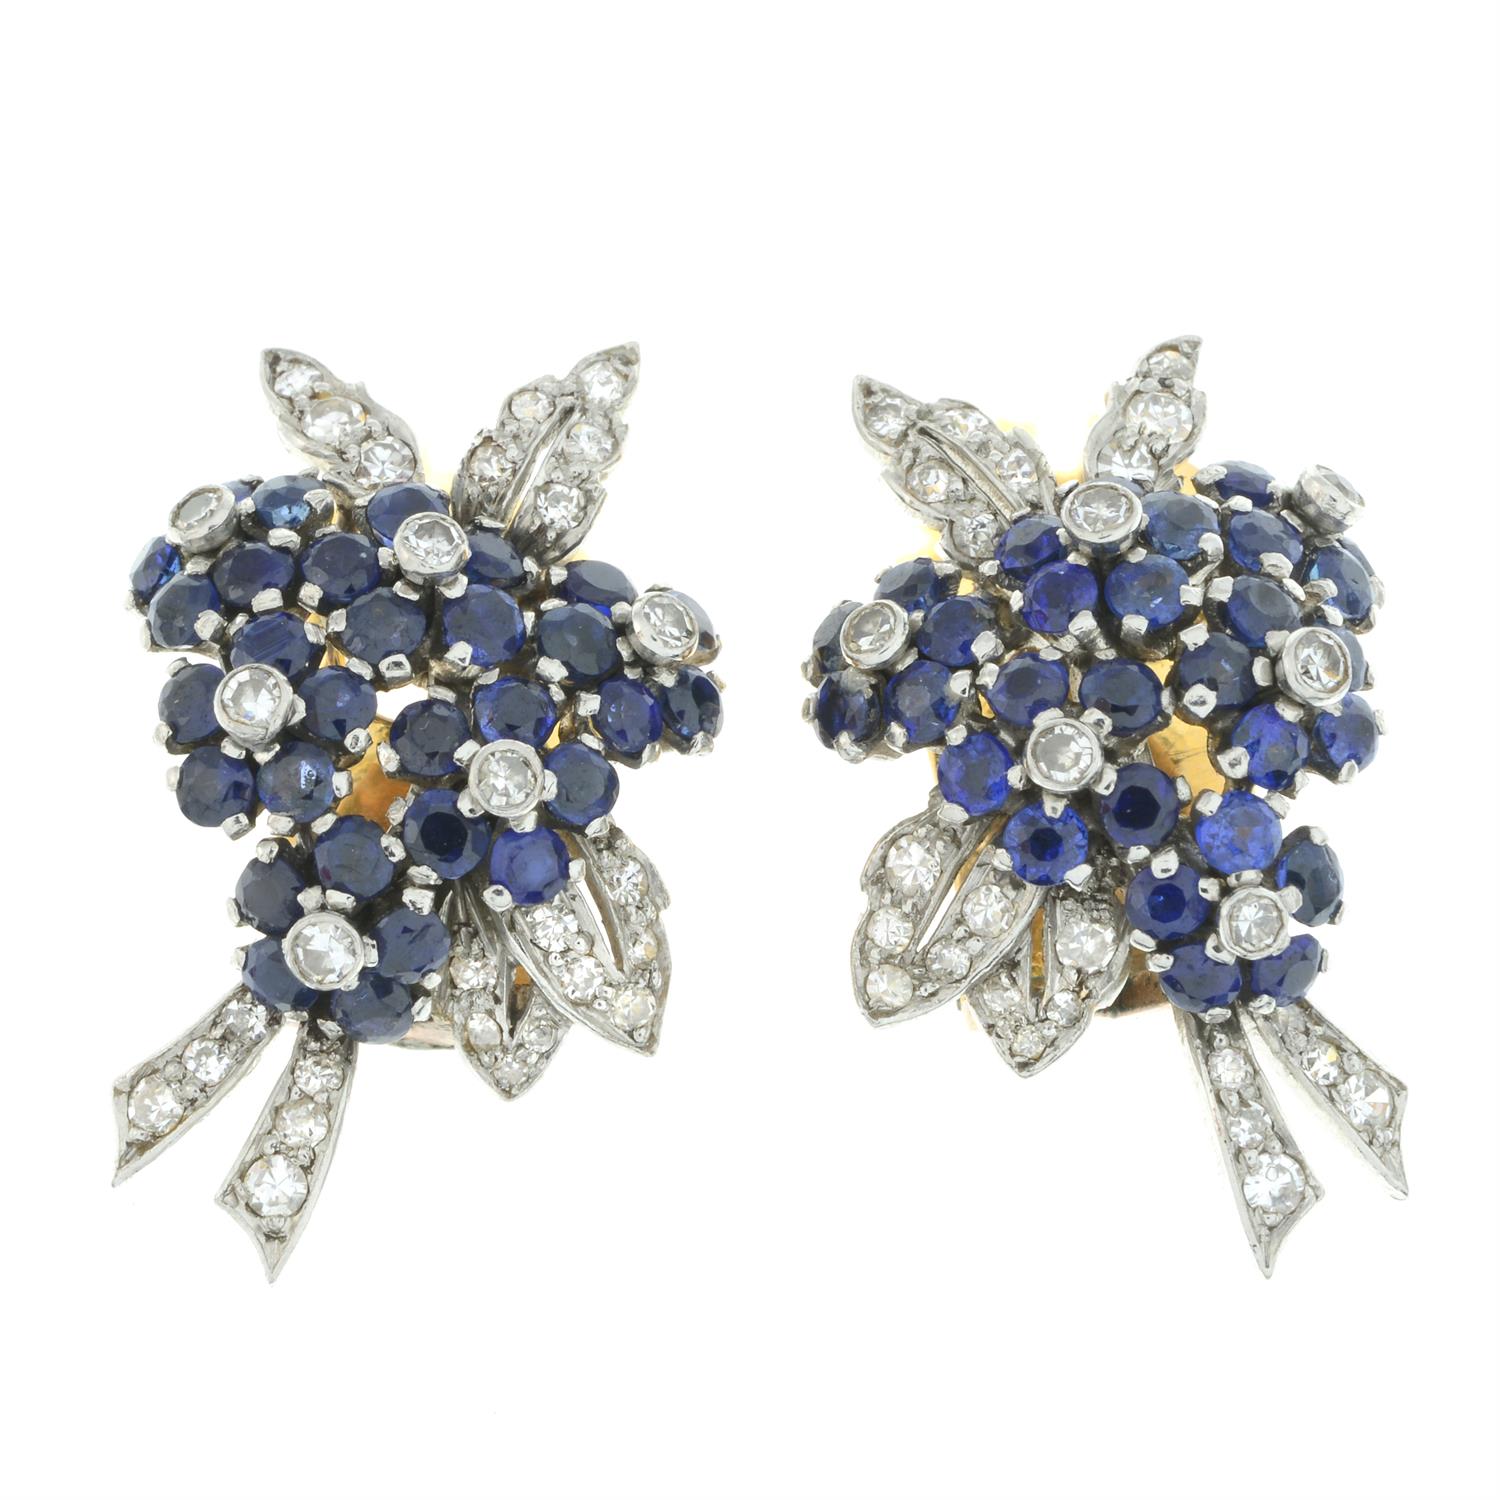 Diamond and sapphire earrings, by Van Cleef & Arpels - Image 2 of 4